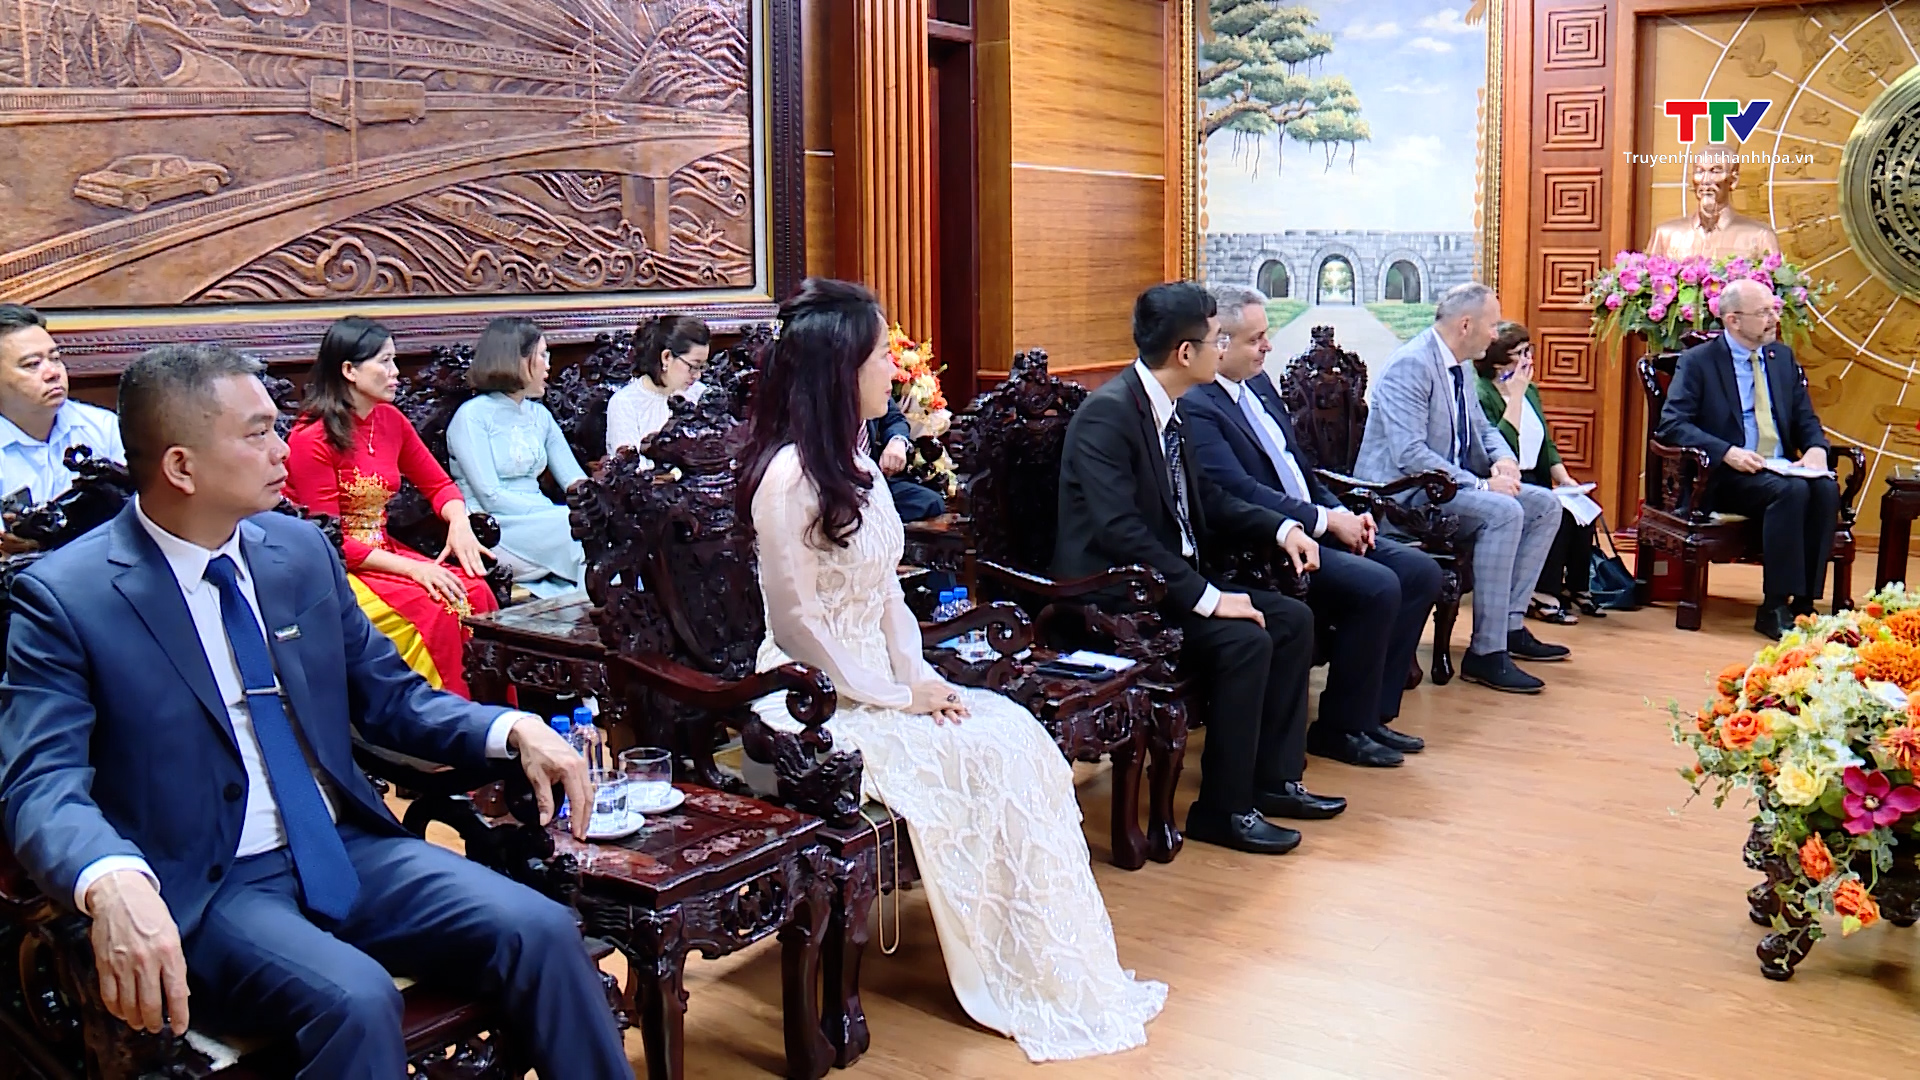 Chủ tịch Ủy ban Nhân dân tỉnh Đỗ Minh Tuấn tiếp xã giao Đại sứ đặc mệnh toàn quyền Nhà nước Thụy Sỹ tại Việt Nam- Ảnh 2.